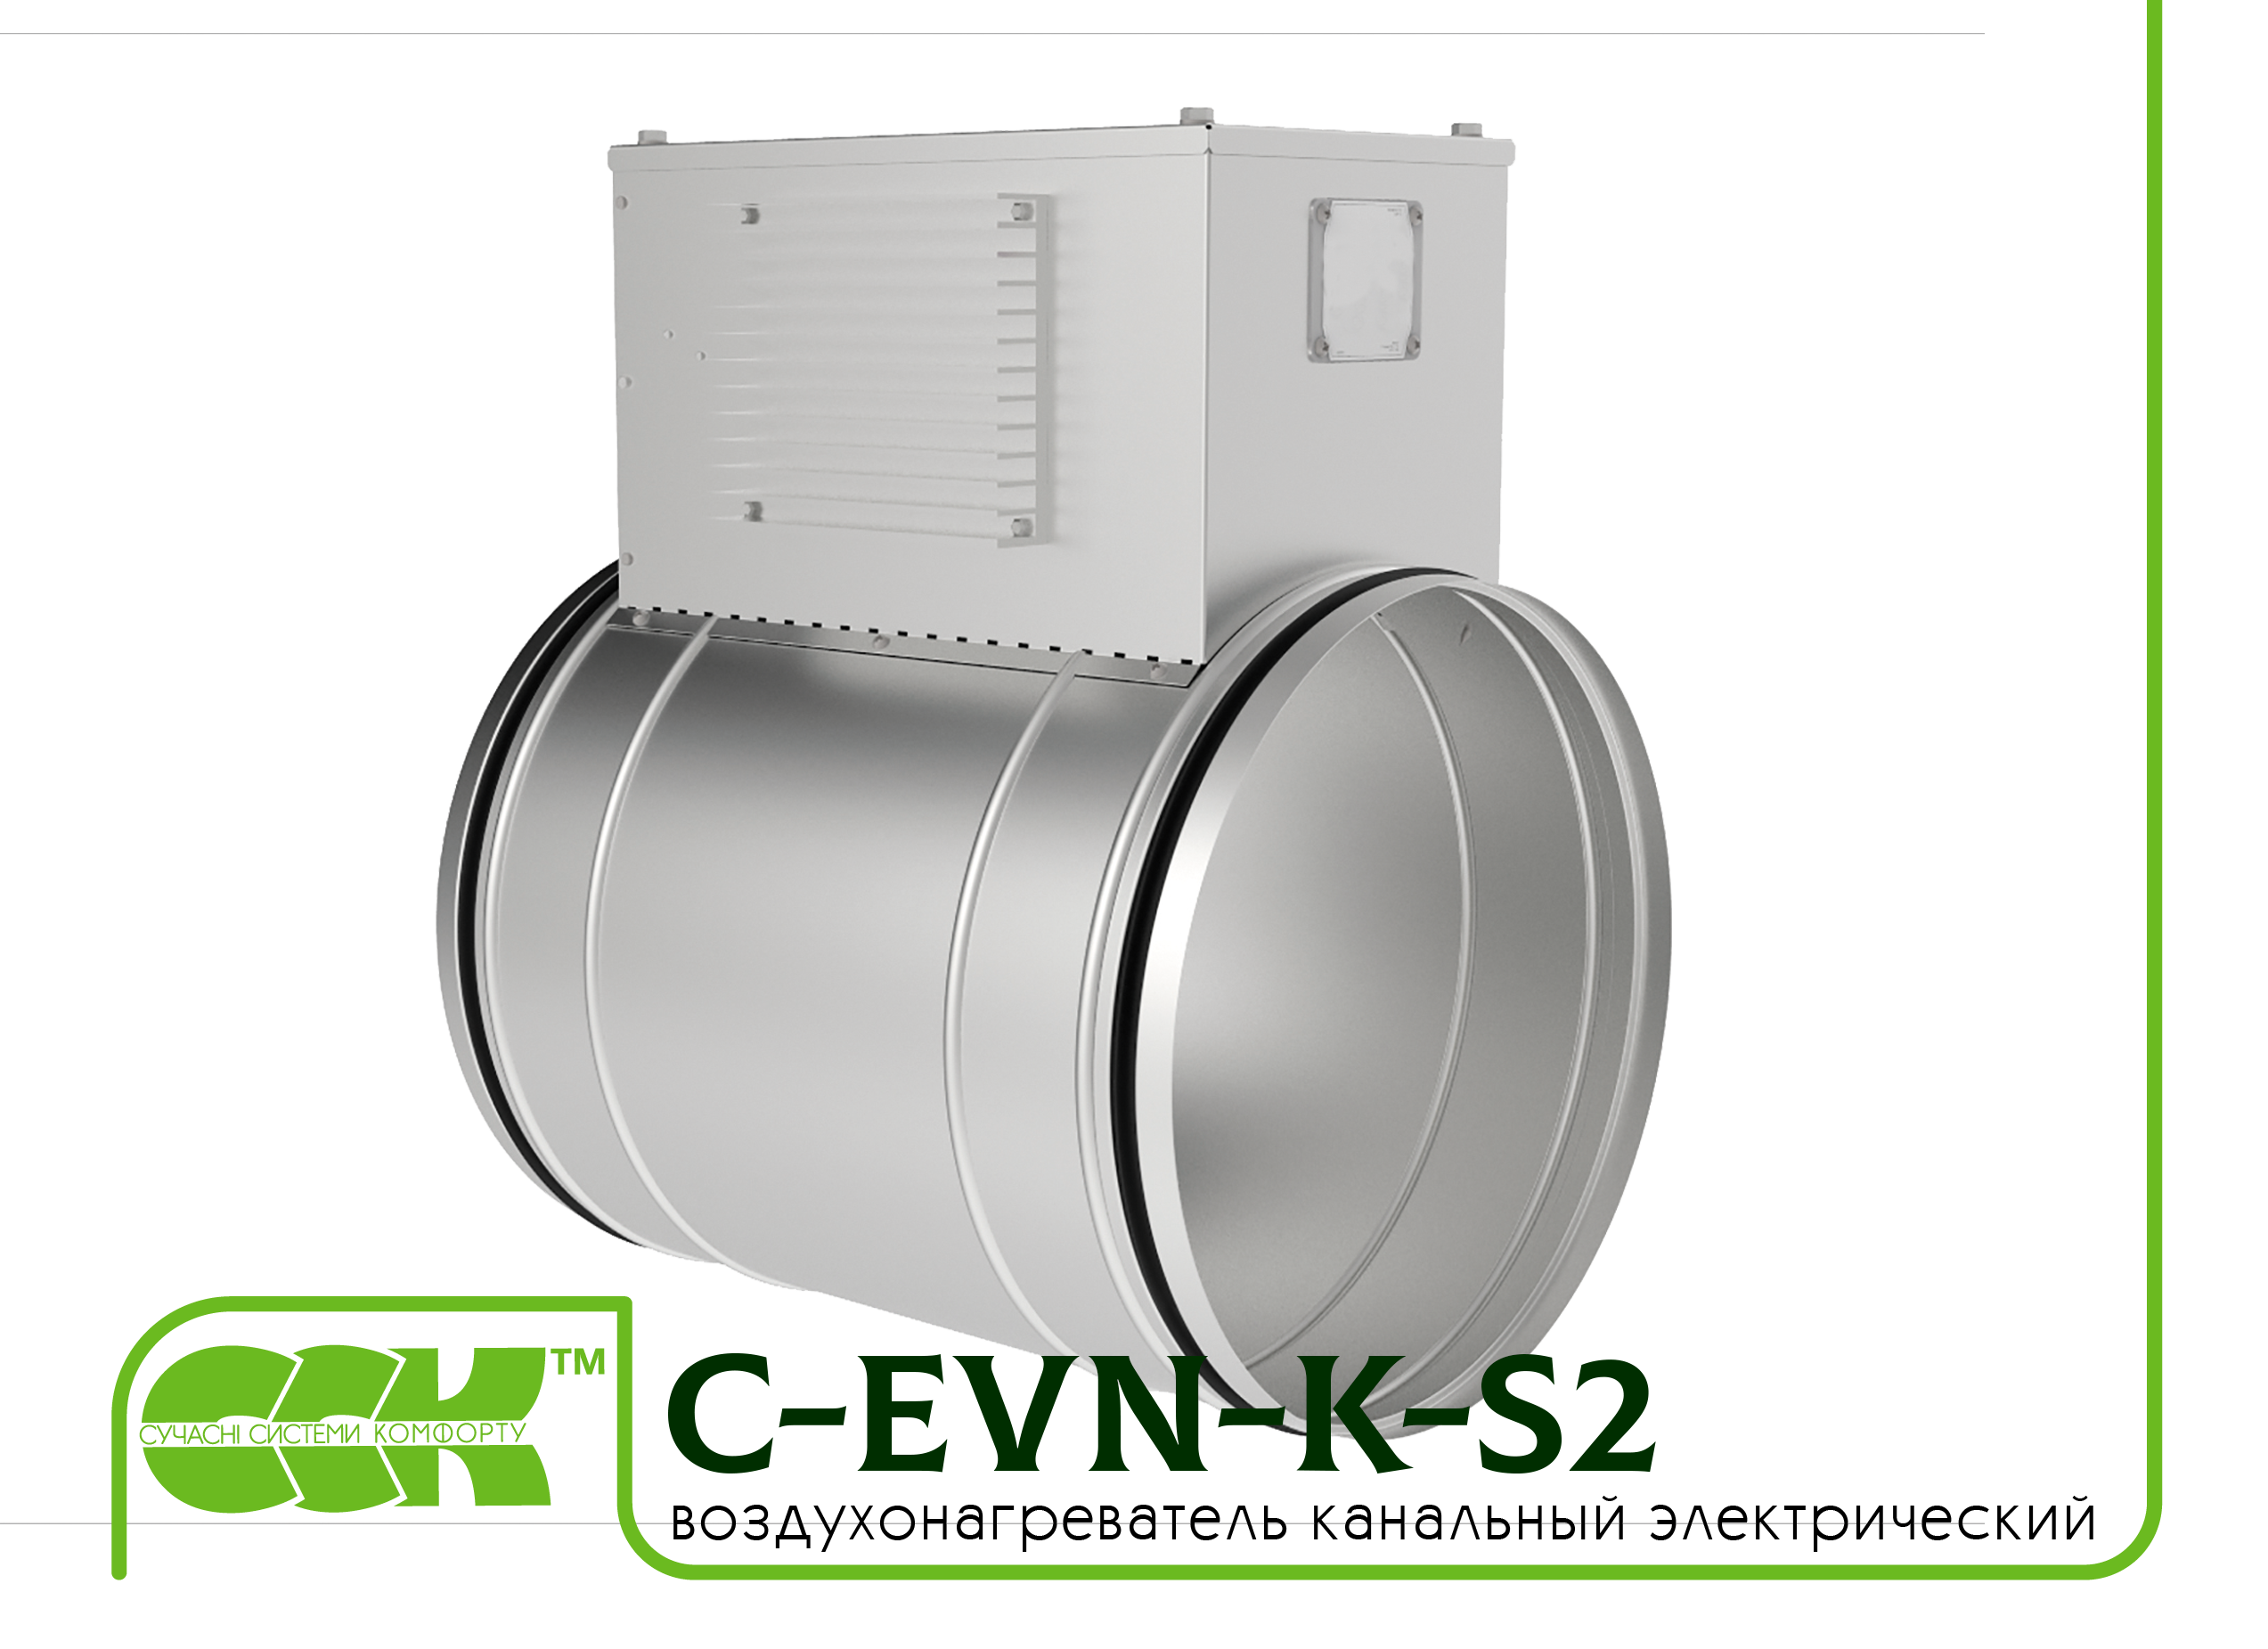 Воздухонагреватель канальный электрический для круглых каналов C-EVN-K-S2-250-4,5